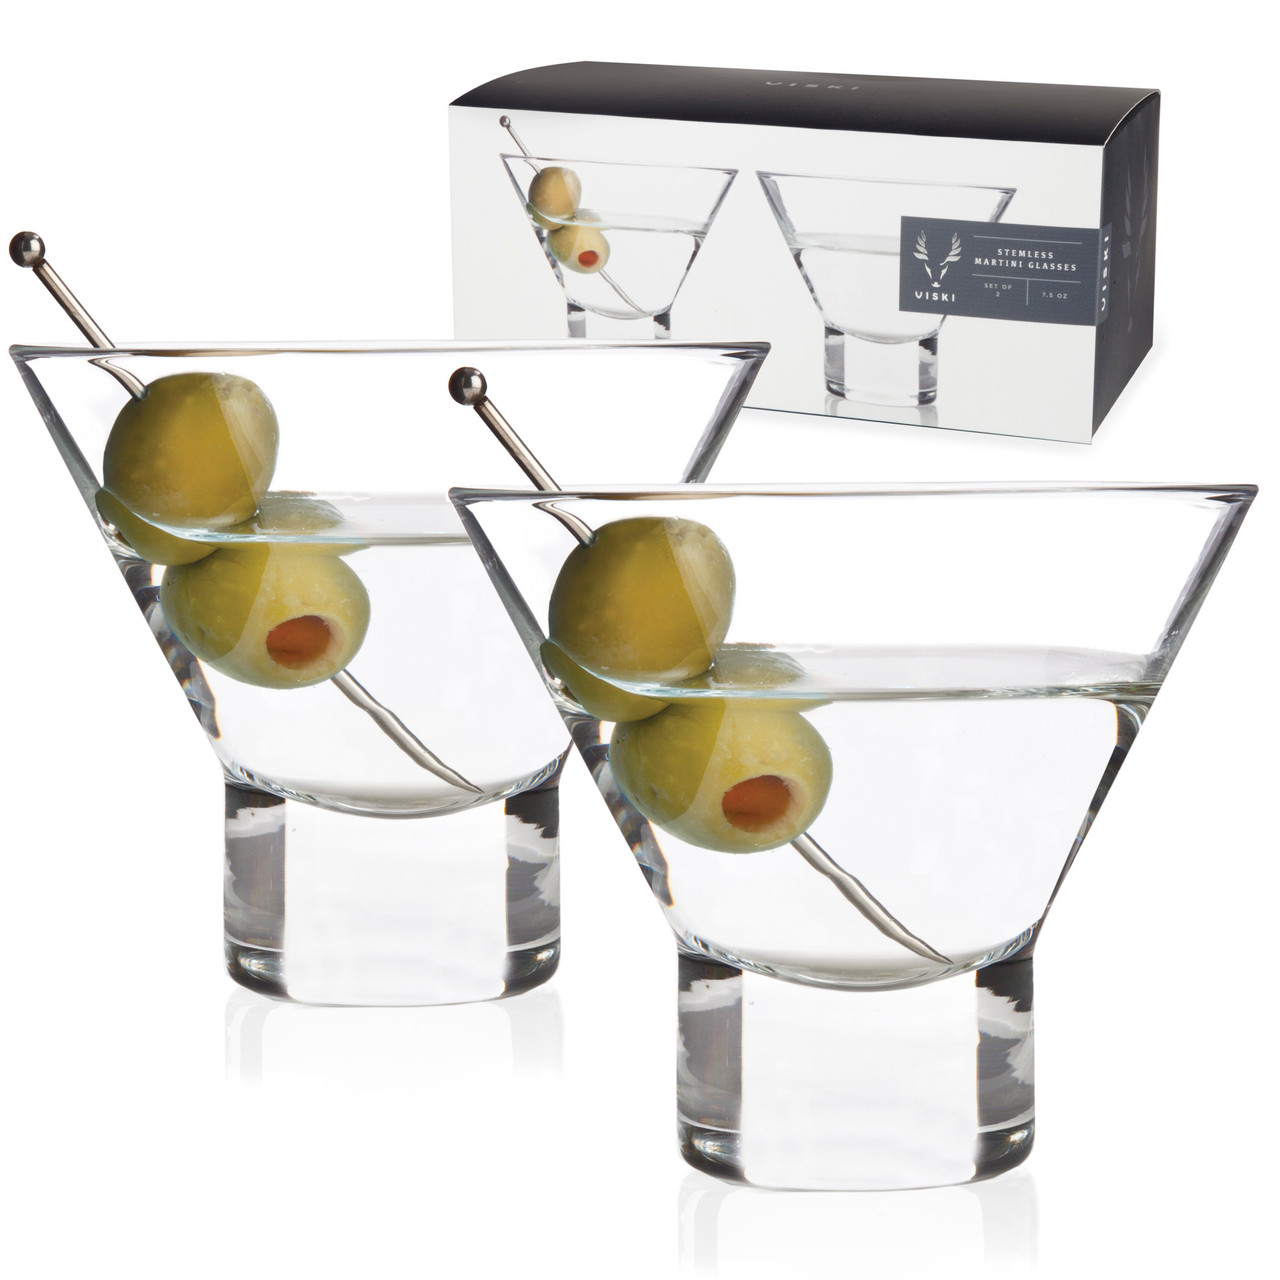 Viski Stemmed Crystal Martini Glasses - Set of 2